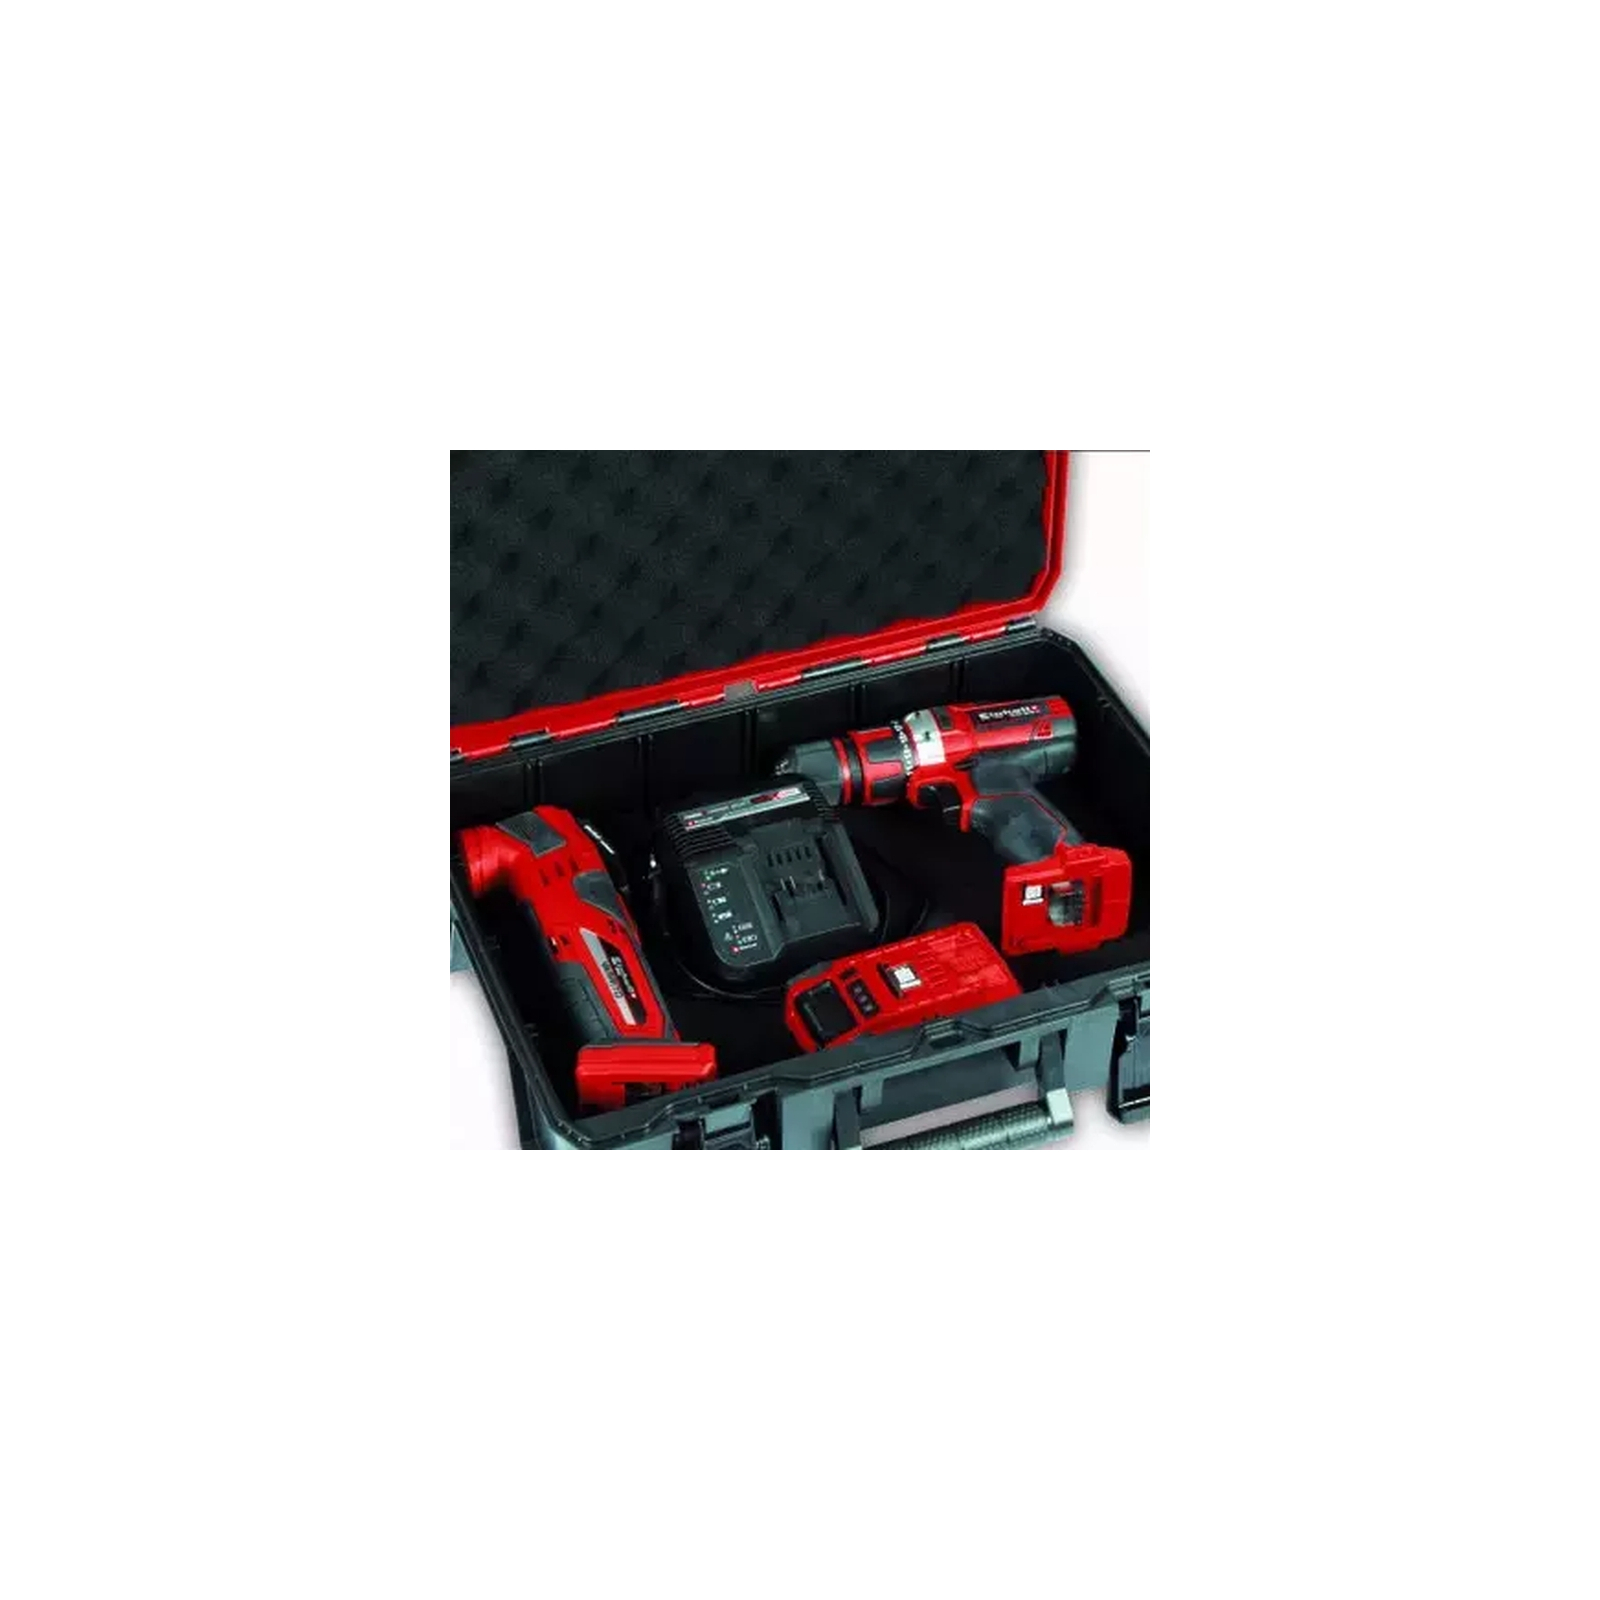 Ящик для инструментов Einhell E-Case S-F, до 25кг, поролоновые вкладыши (4540011) изображение 6